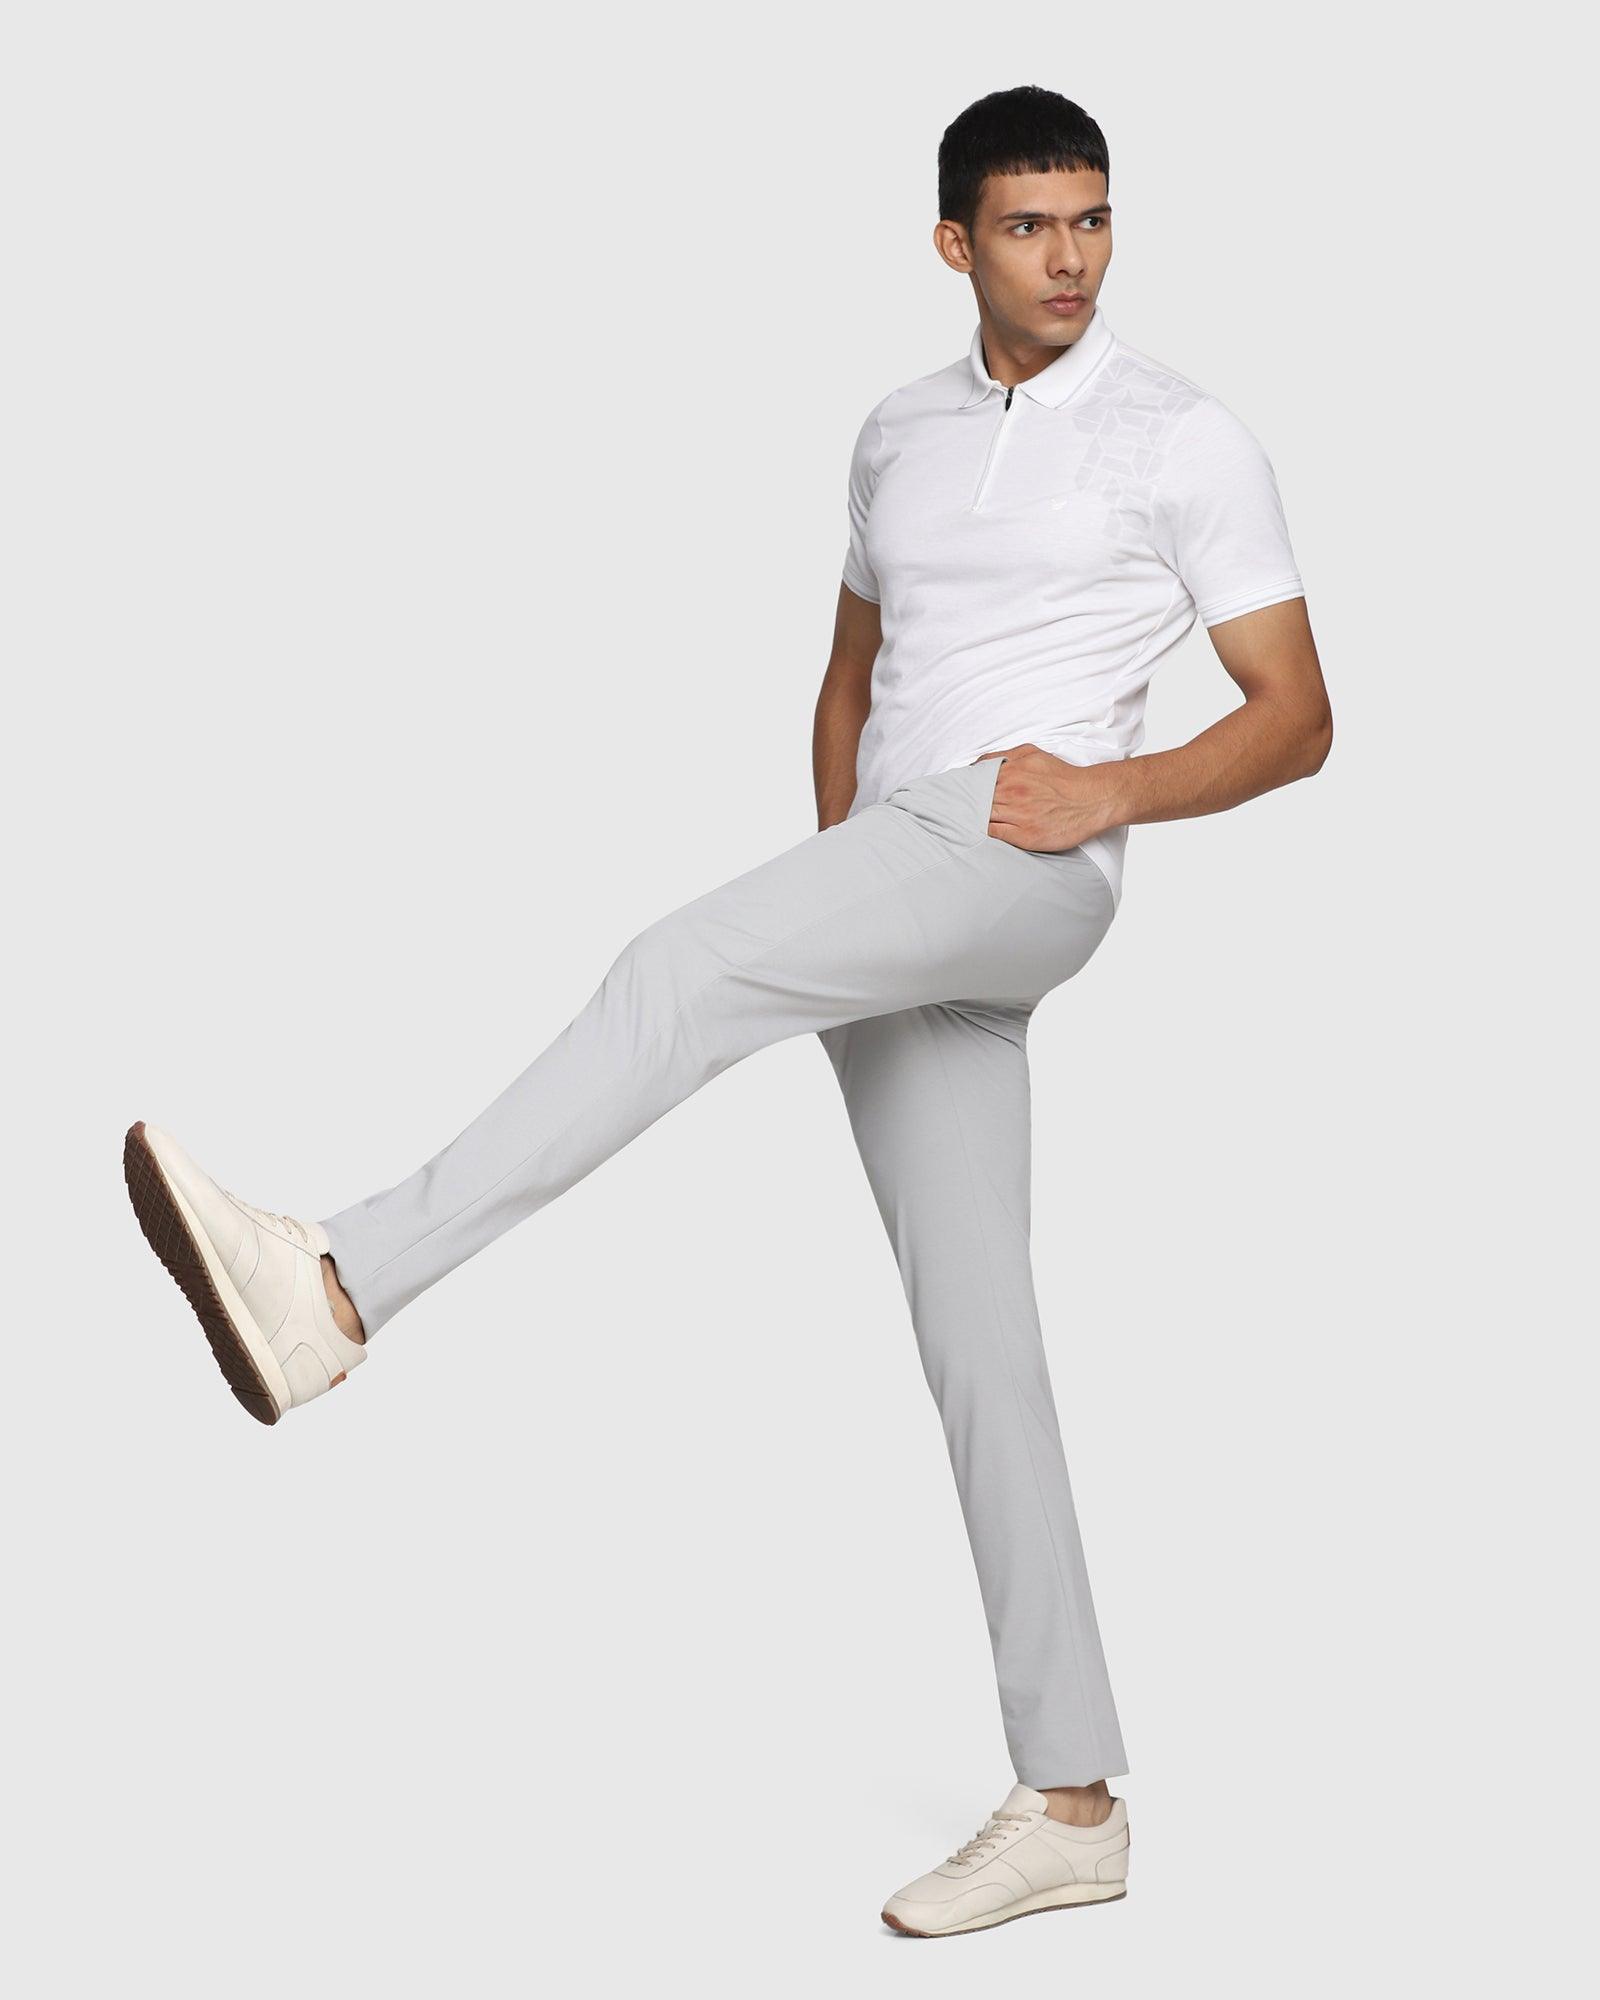 TAHVO Slim Fit Men White Trousers  Buy TAHVO Slim Fit Men White Trousers  Online at Best Prices in India  Flipkartcom